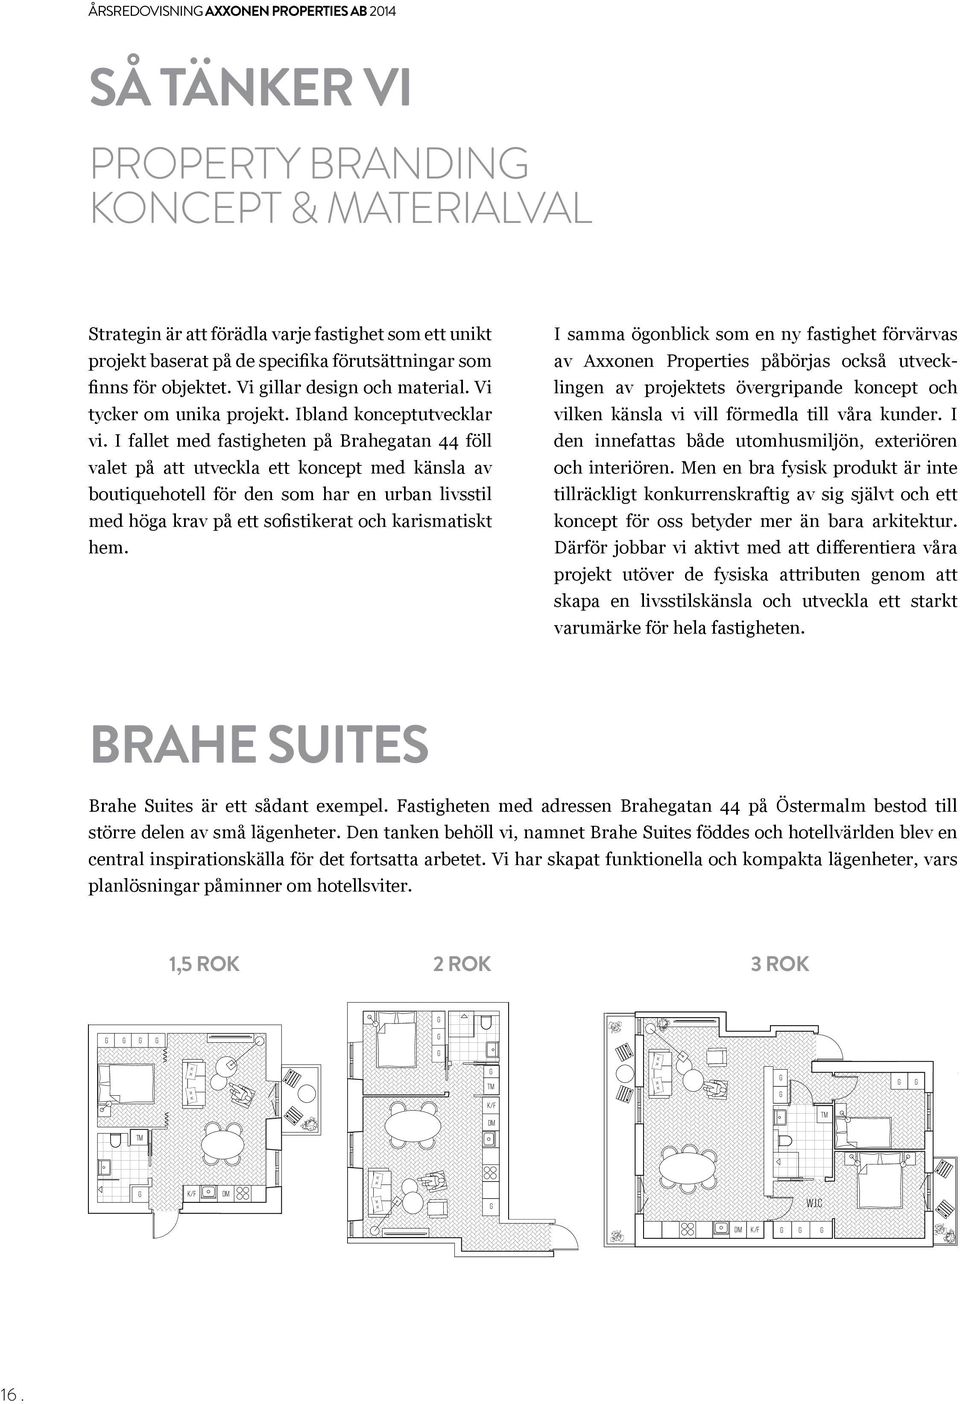 I fallet med fastigheten på Brahegatan 44 föll valet på att utveckla ett koncept med känsla av boutiquehotell för den som har en urban livsstil med höga krav på ett sofistikerat och karismatiskt hem.